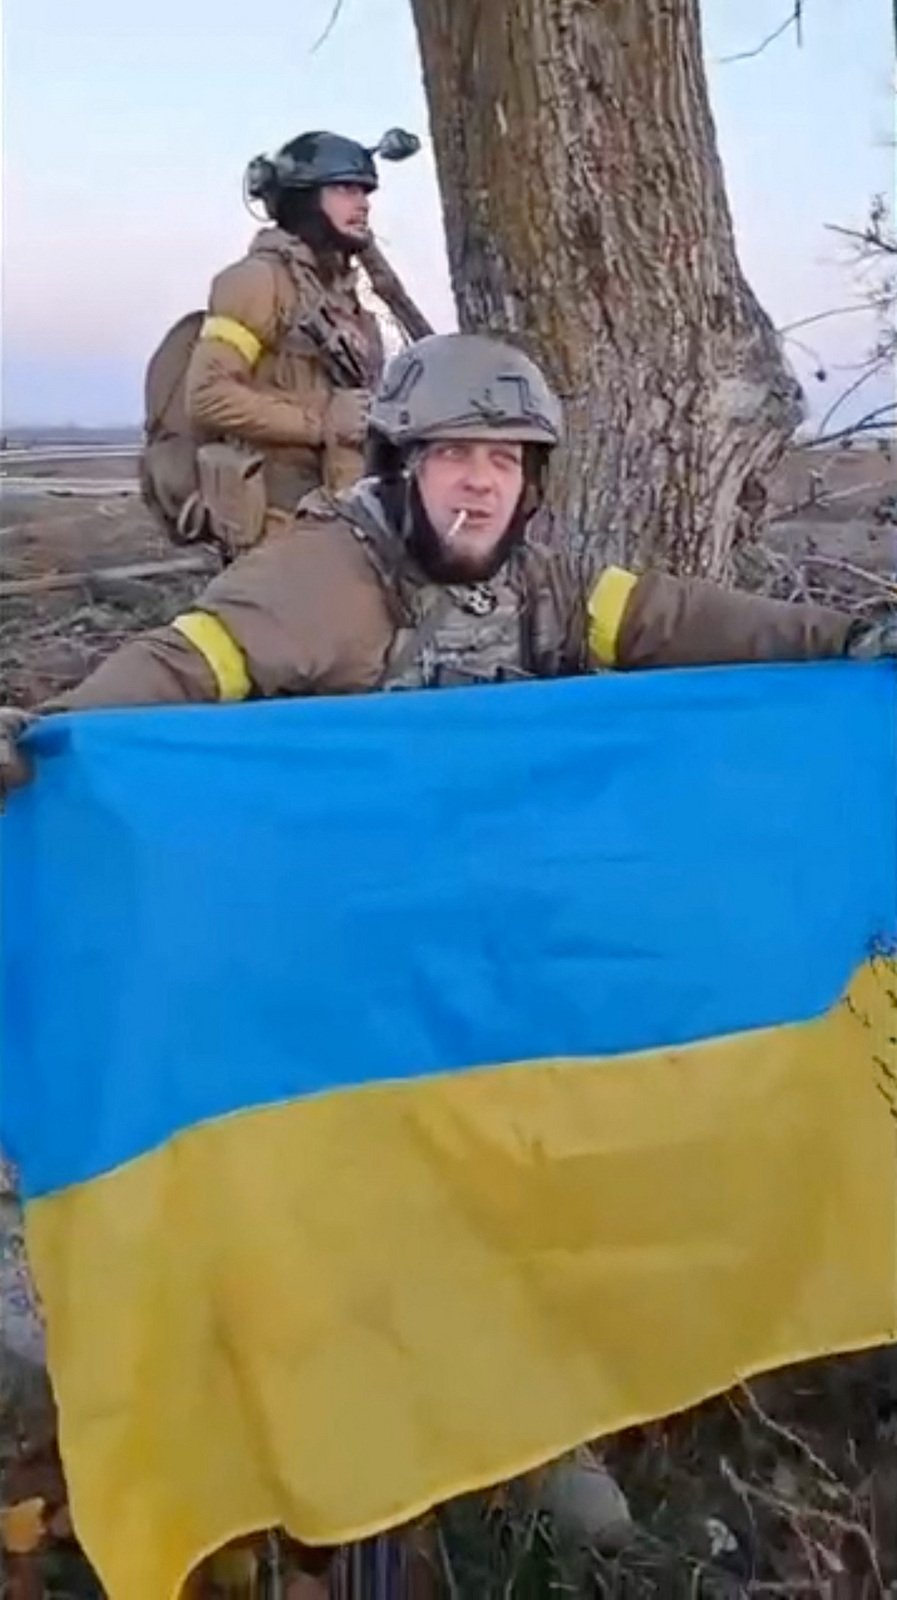 Ukrajinští vojáci před Chersonem, kde očekávají vítězství